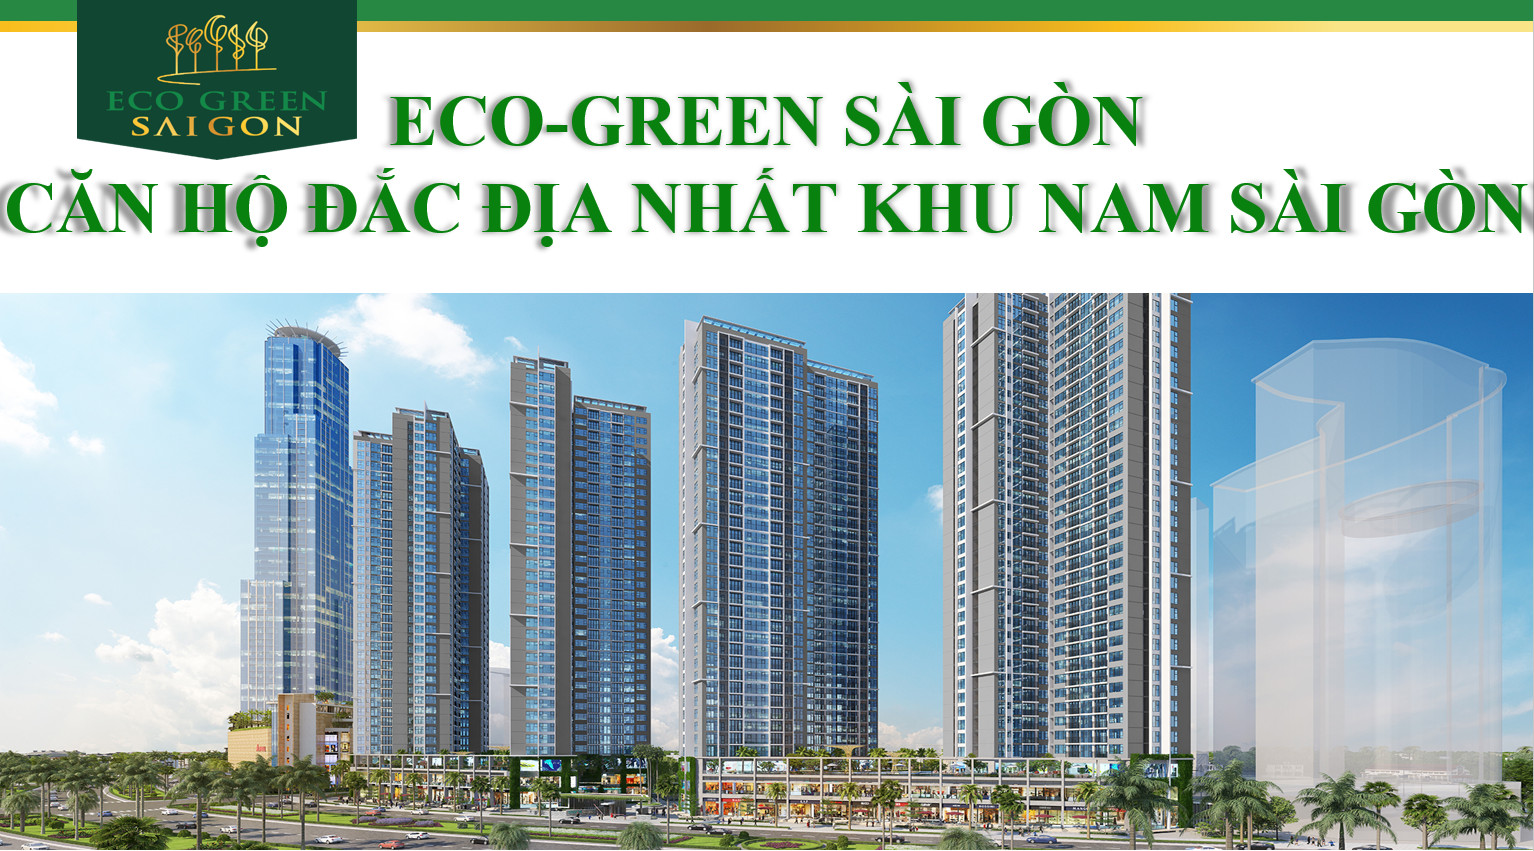 Dự án Eco Green đắc địa nhất khu Nam Sài Gòn